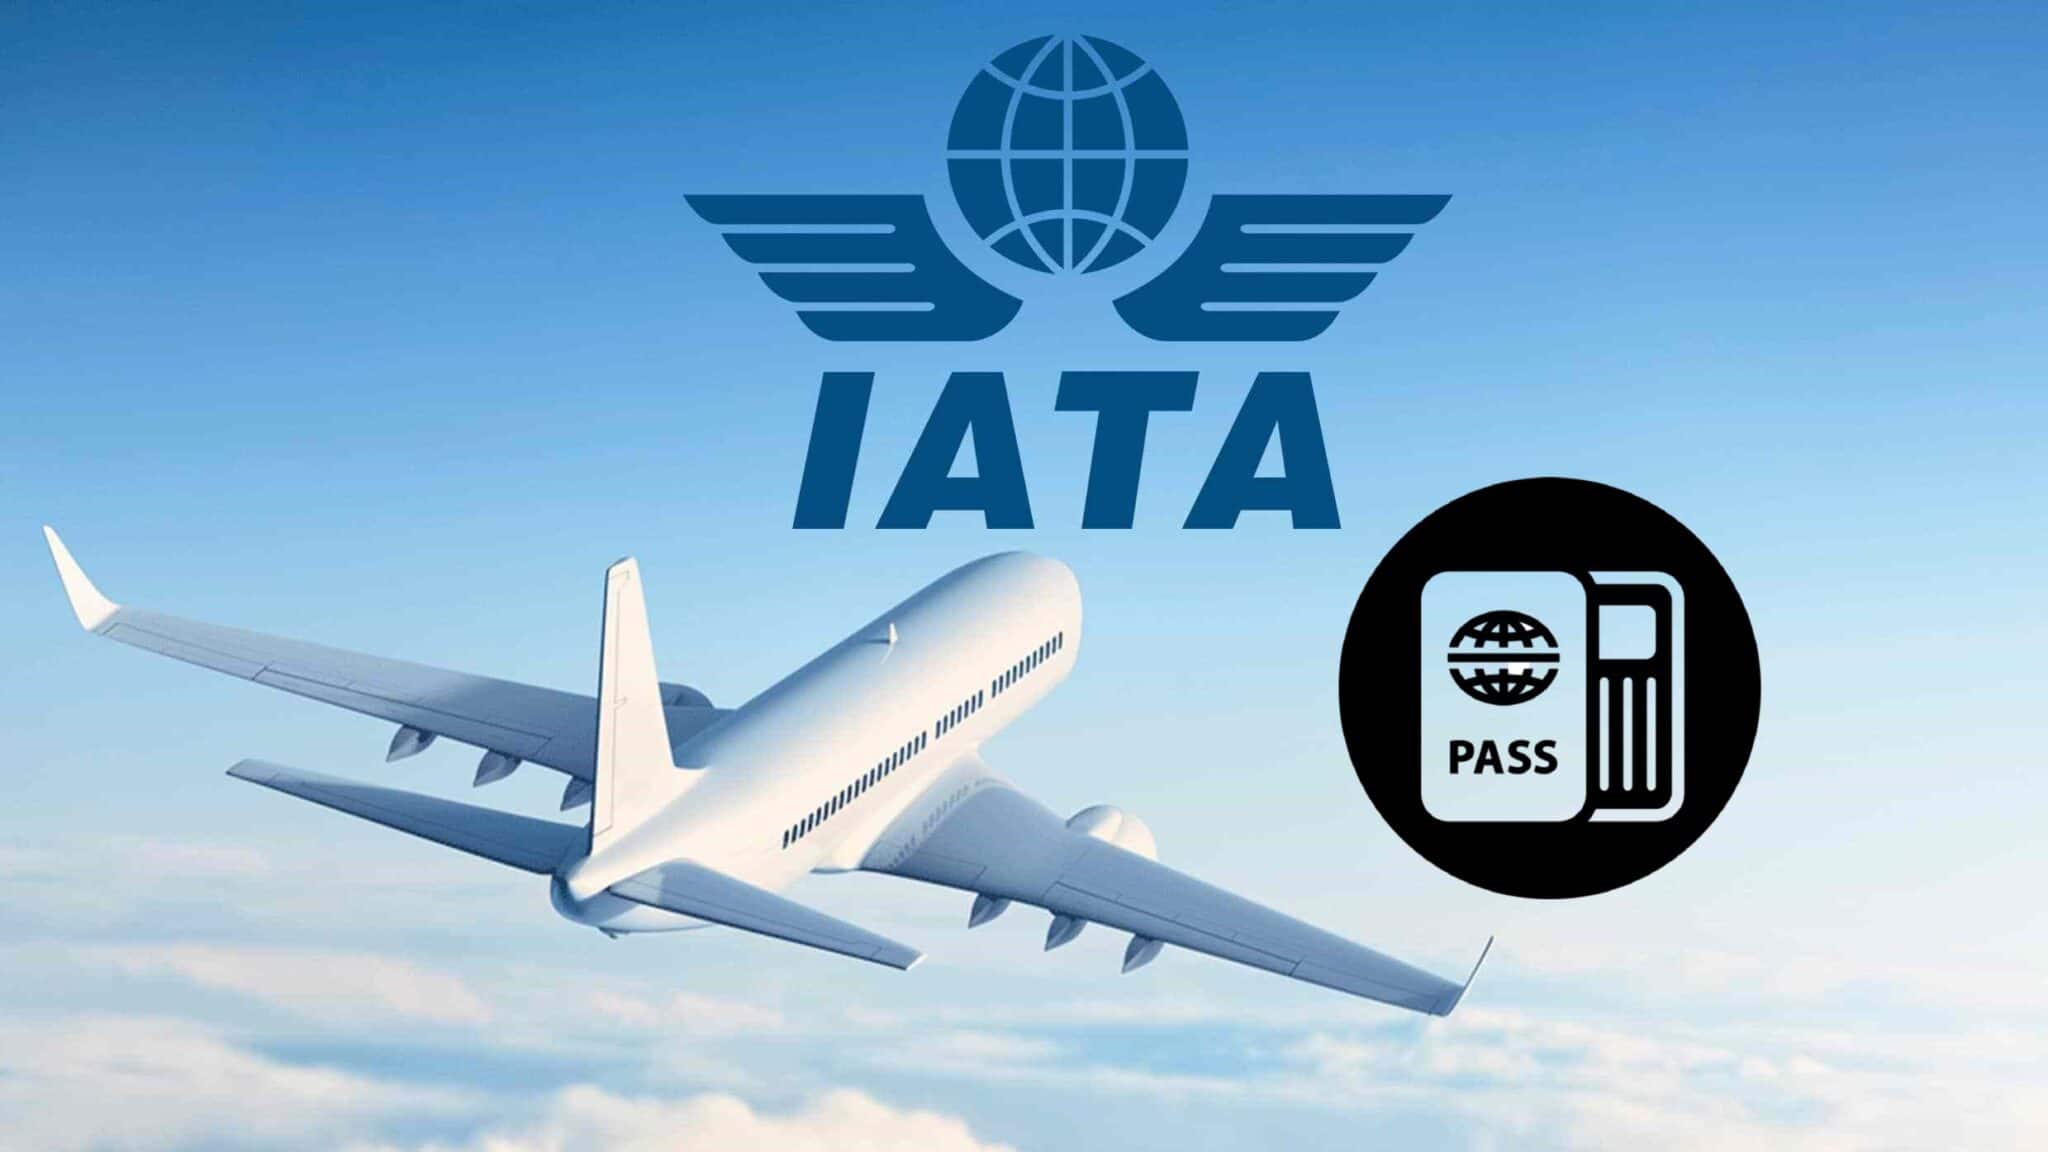 De IATA Travel Pass is in aantocht, app bepaalt of jij mag vliegen